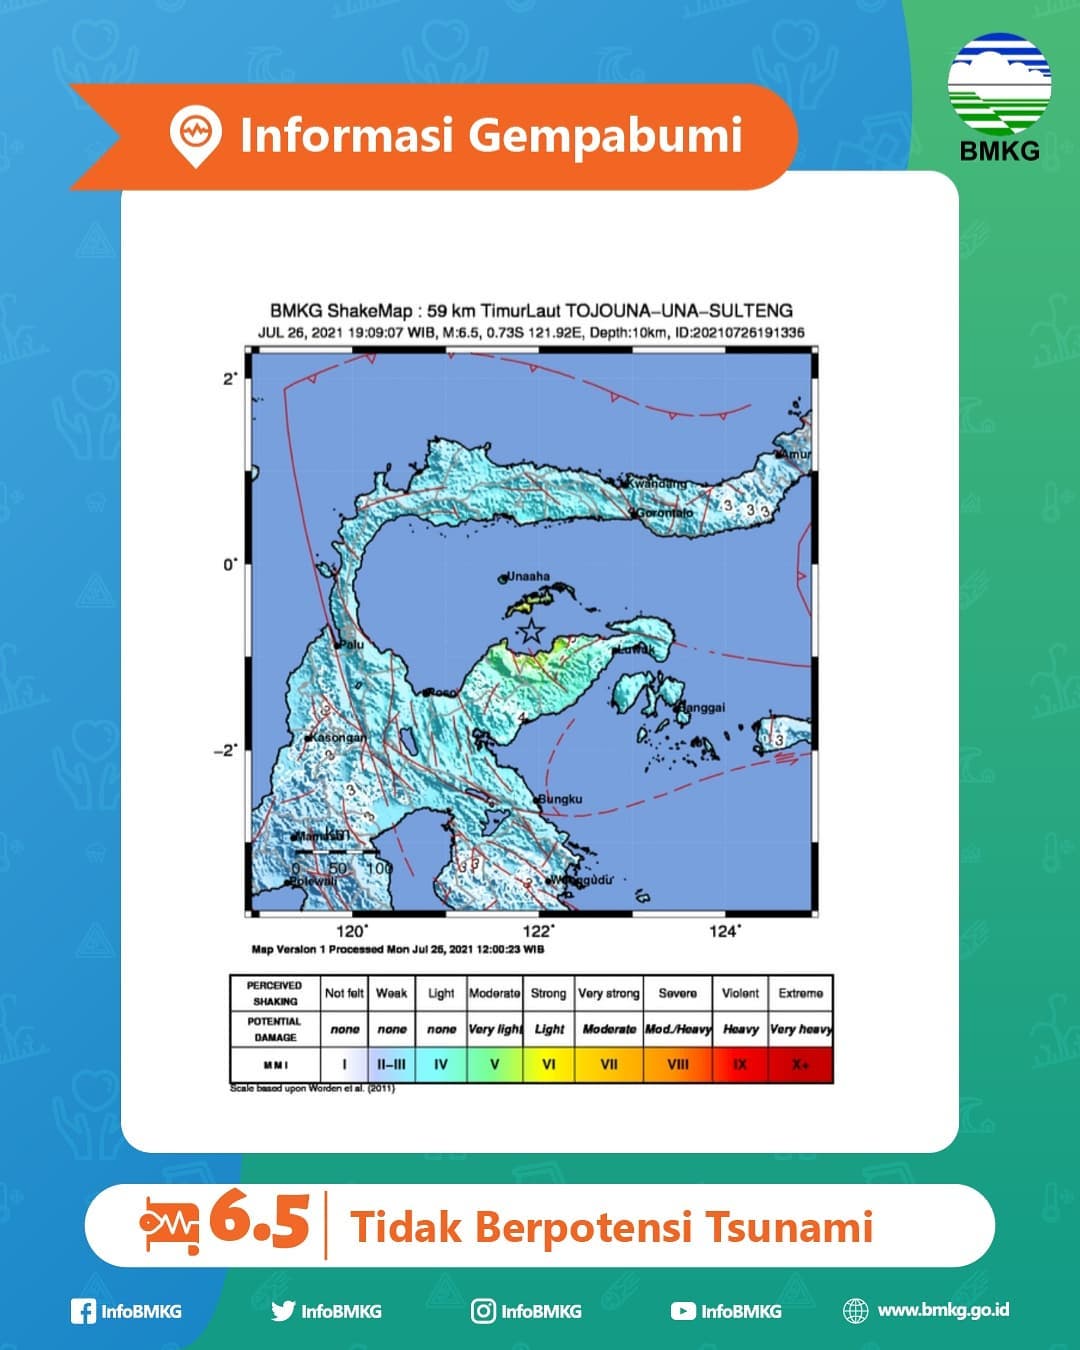 Gempa Bumi dengan kekuatan 6.5 M kembali mengguncang wilayah Teluk Tomini pada Senin (26/07/2021) Pukul 20.40 WITA.